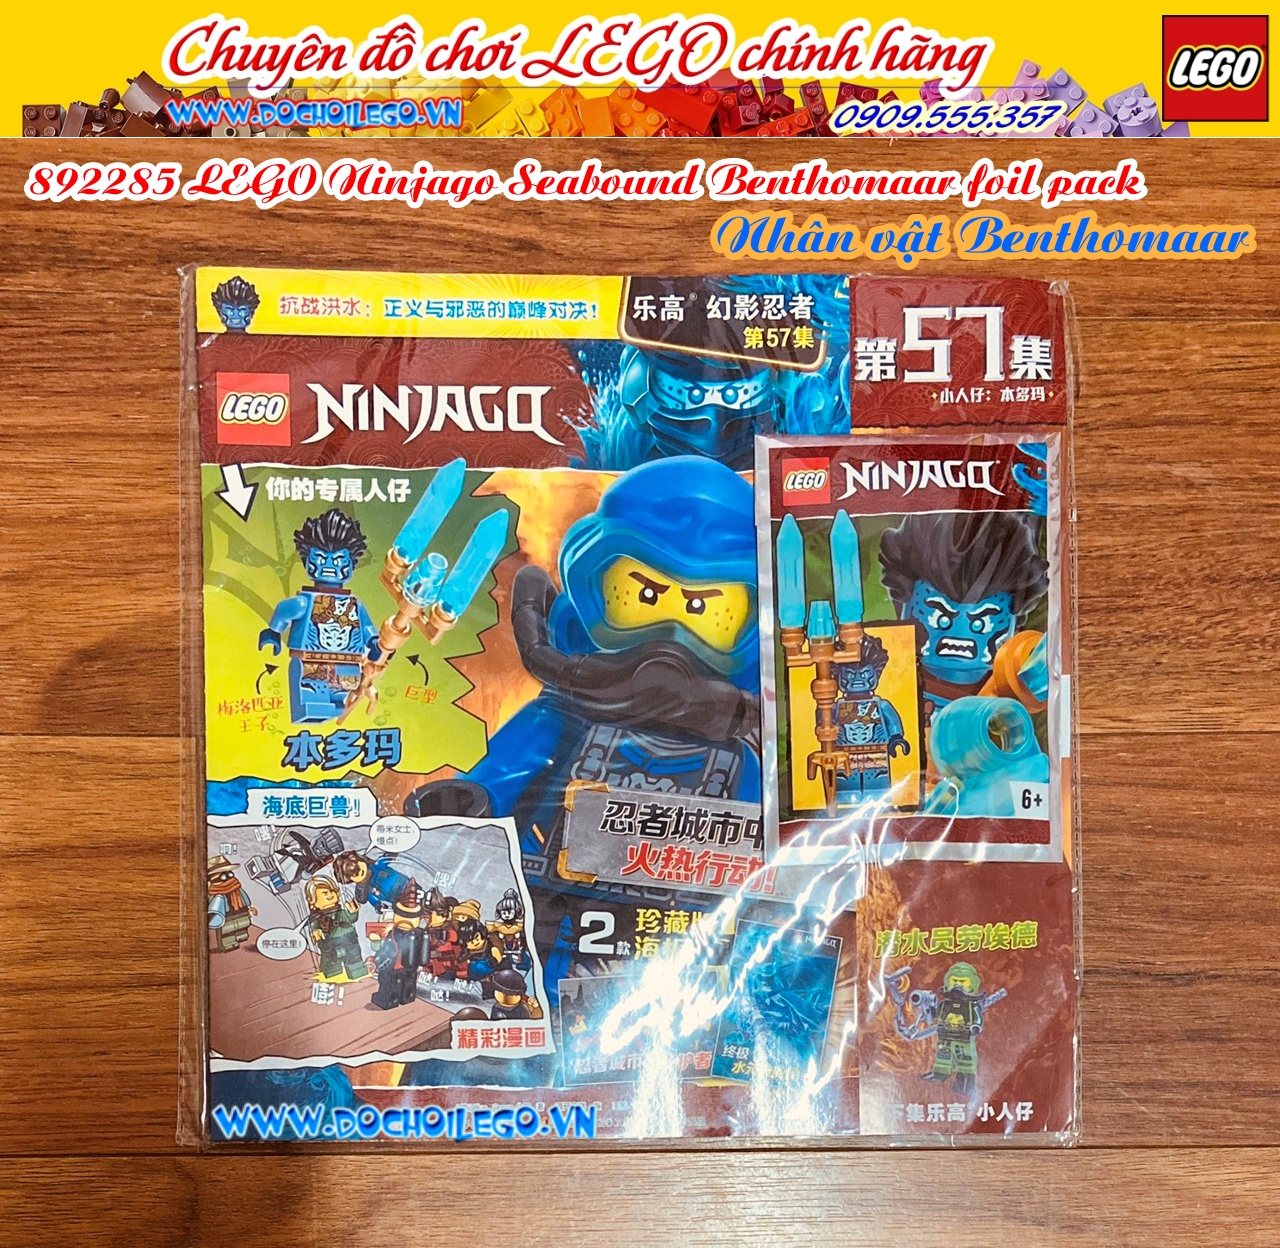 892285 LEGO Ninjago Seabound Benthomaar foil- Nhân vật Benthomaar - Tạp chí LEGO Ninjago có kèm Minifigures - Phiên bản tiếng Trung - Hàng chính hãng LEGO